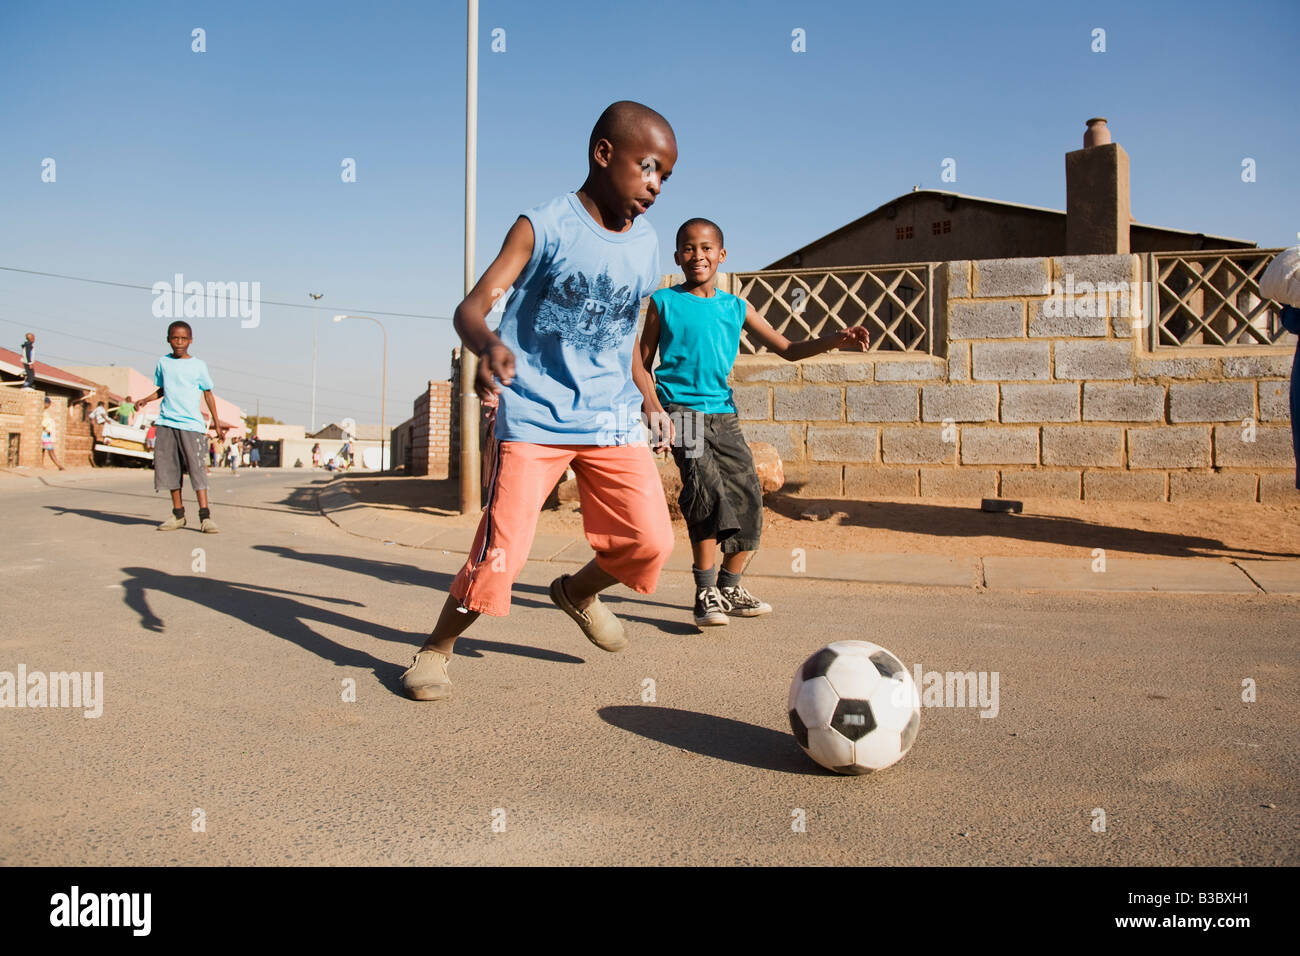 afrikanischen jungen spielen Fußball auf der Straße Stockfoto